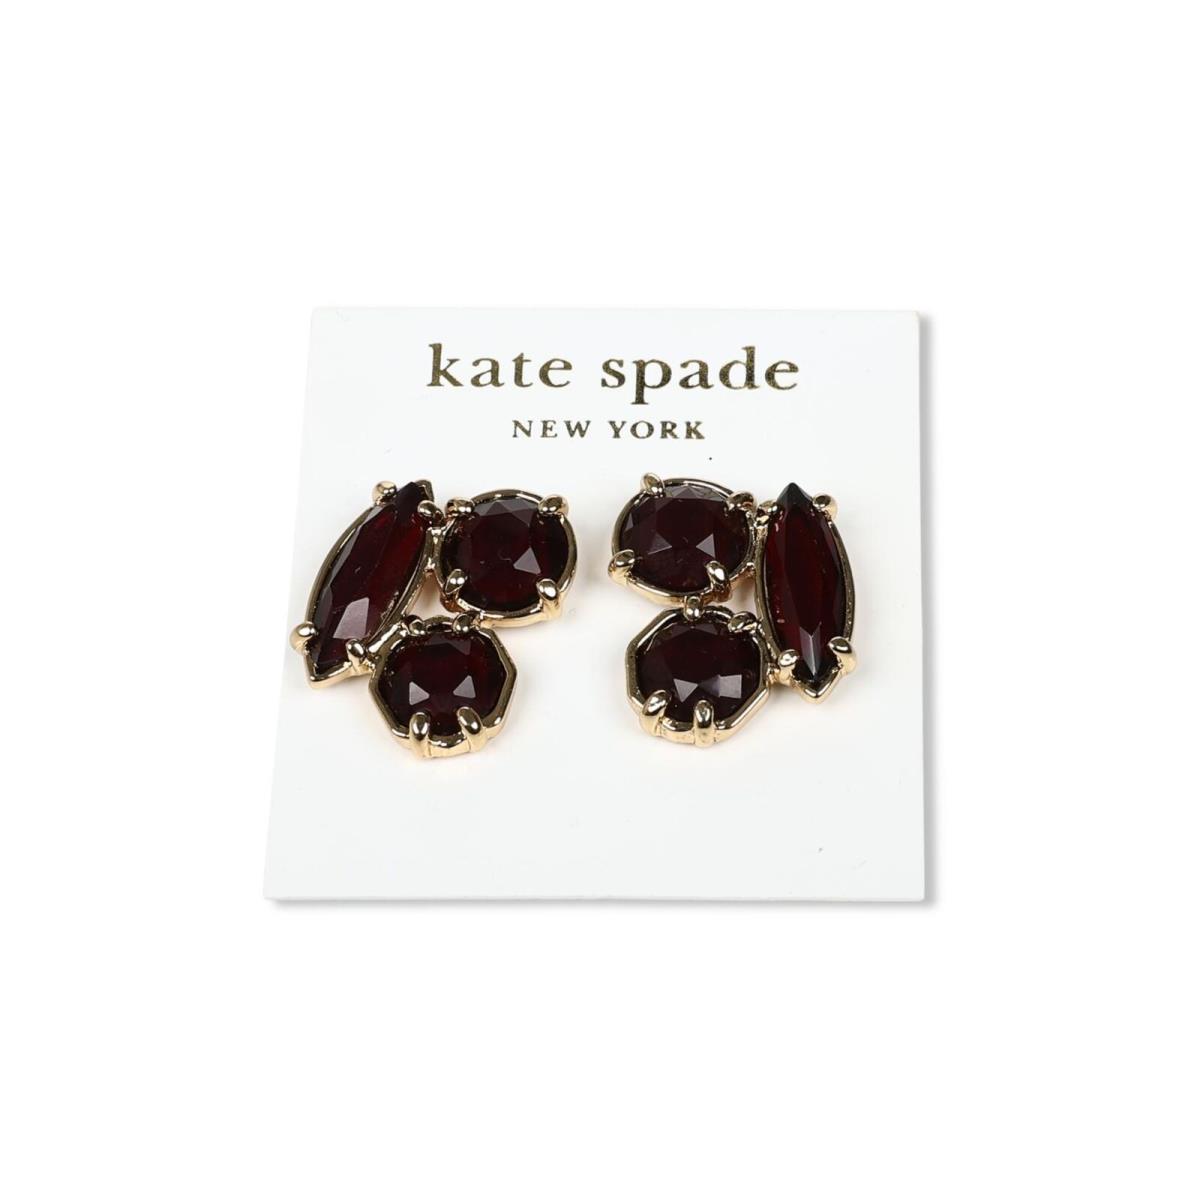 Kate Spade New York 301333 Desert Stone Cluster Rubby Stud Earrings